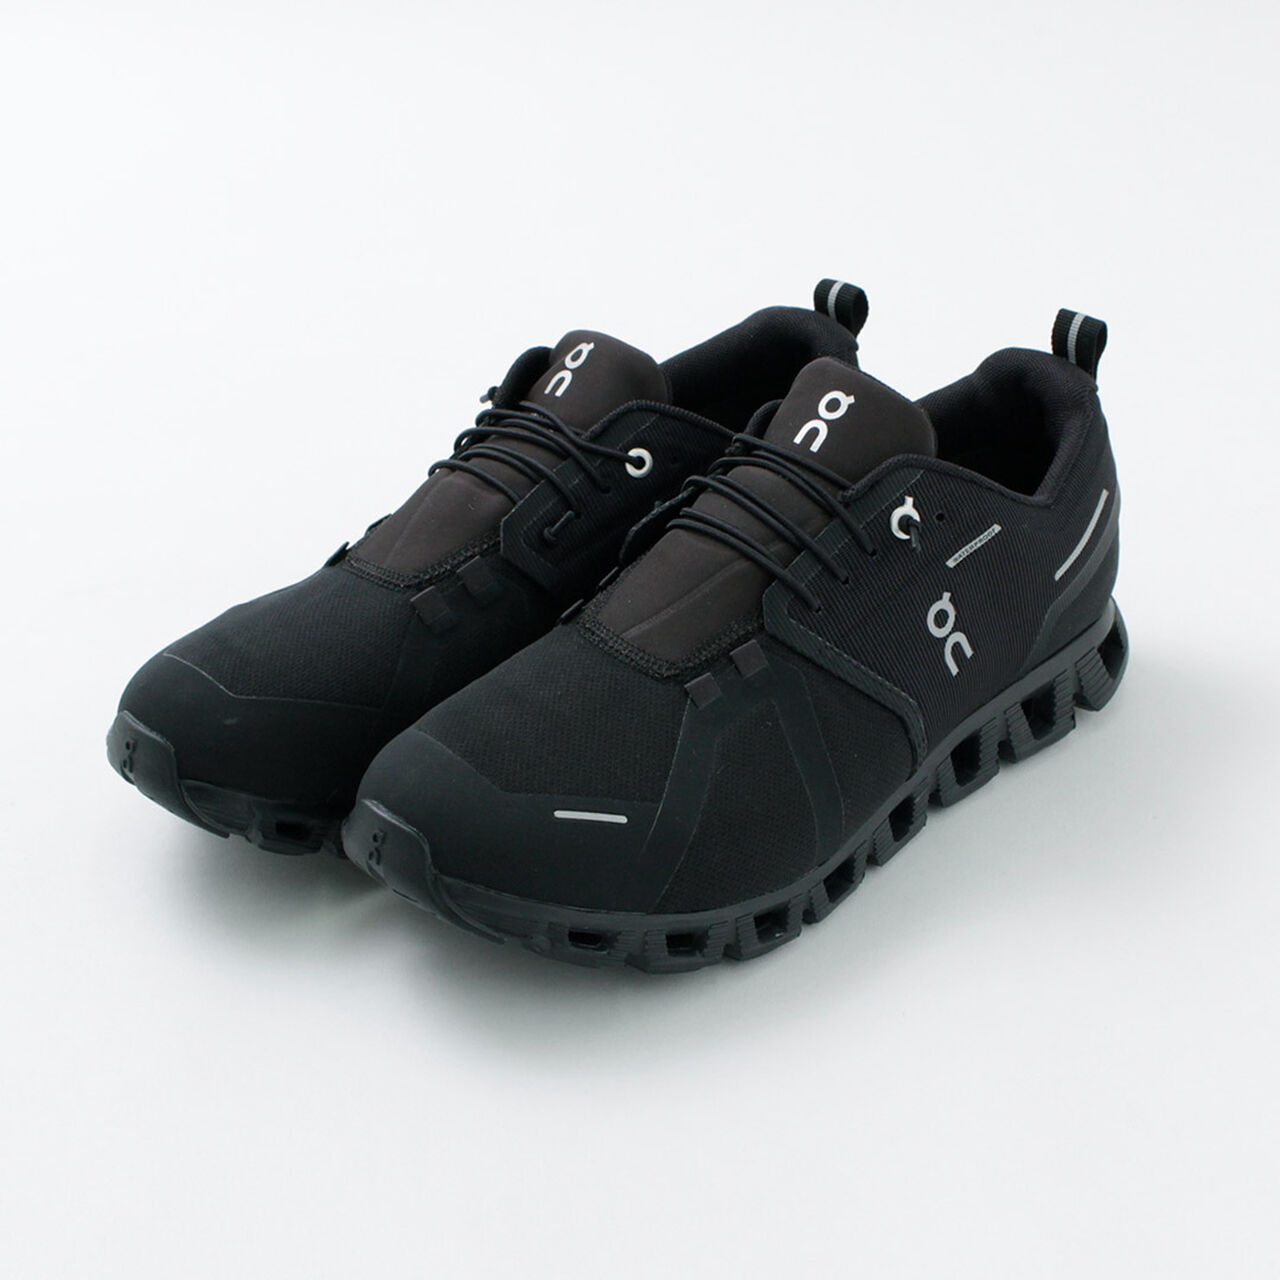 Cloud 5 Waterproof Sneakers,, large image number 13